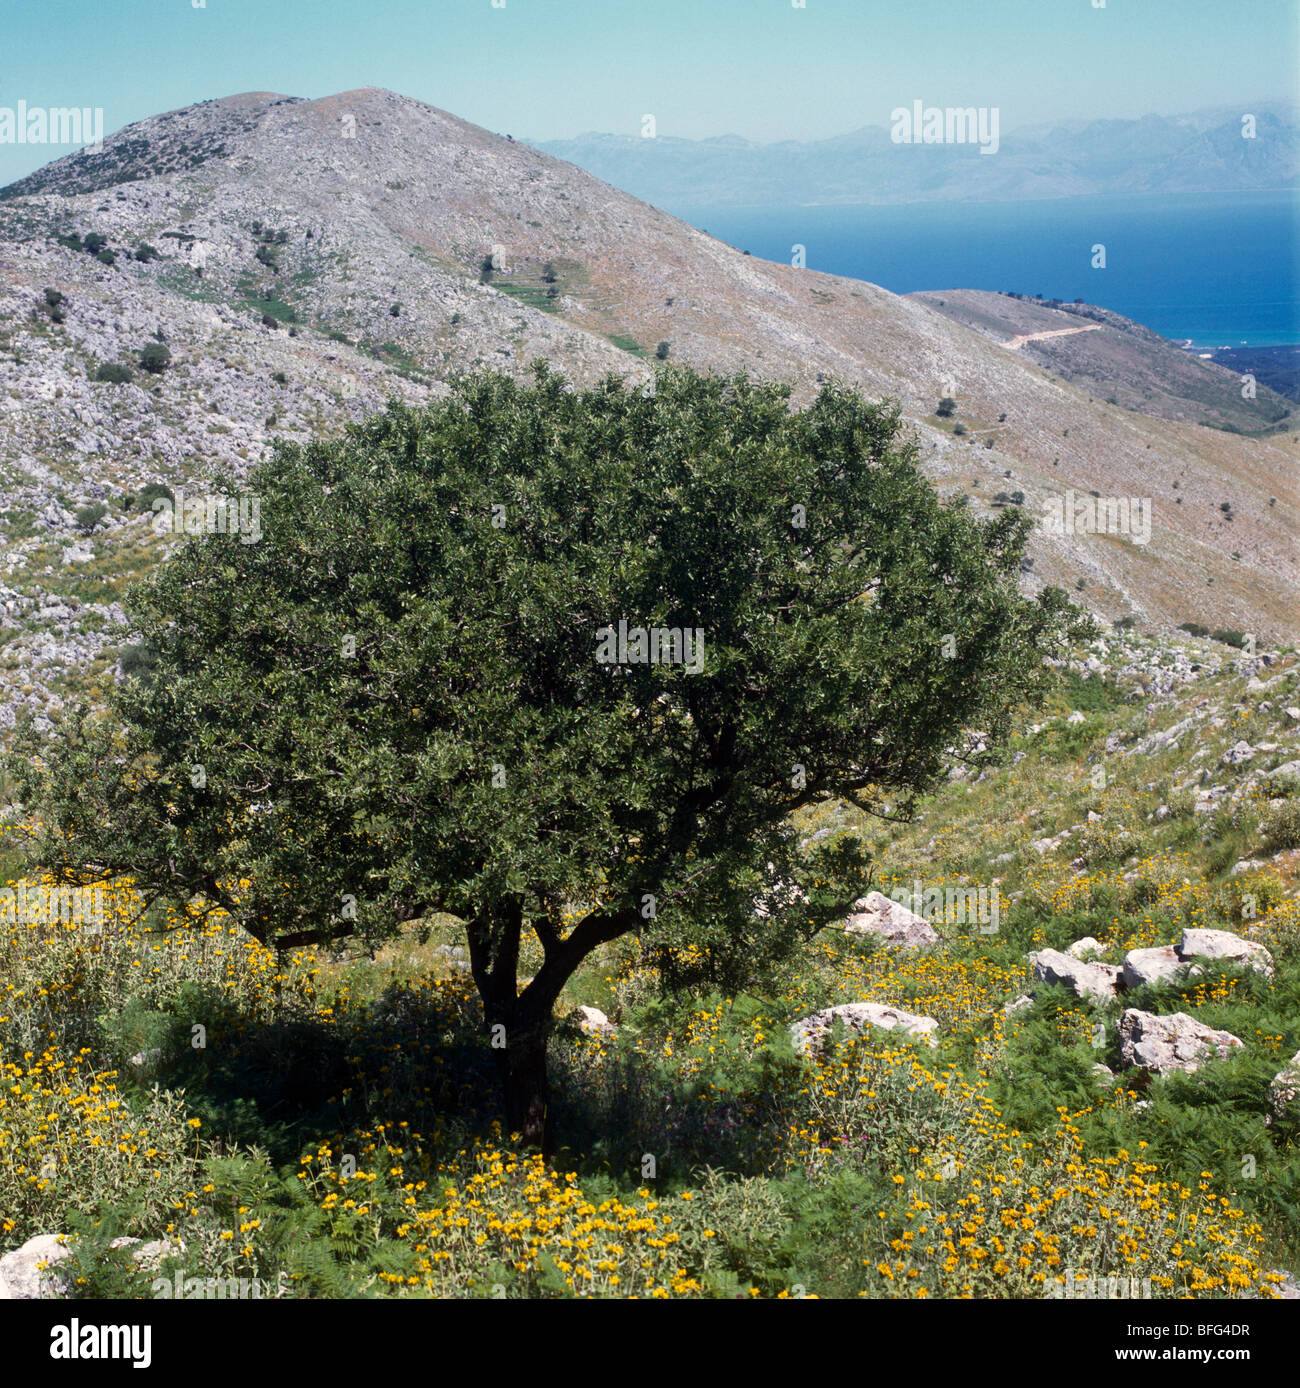 Corfu Greece Mount Pantokrator Olive Tree Stock Photo